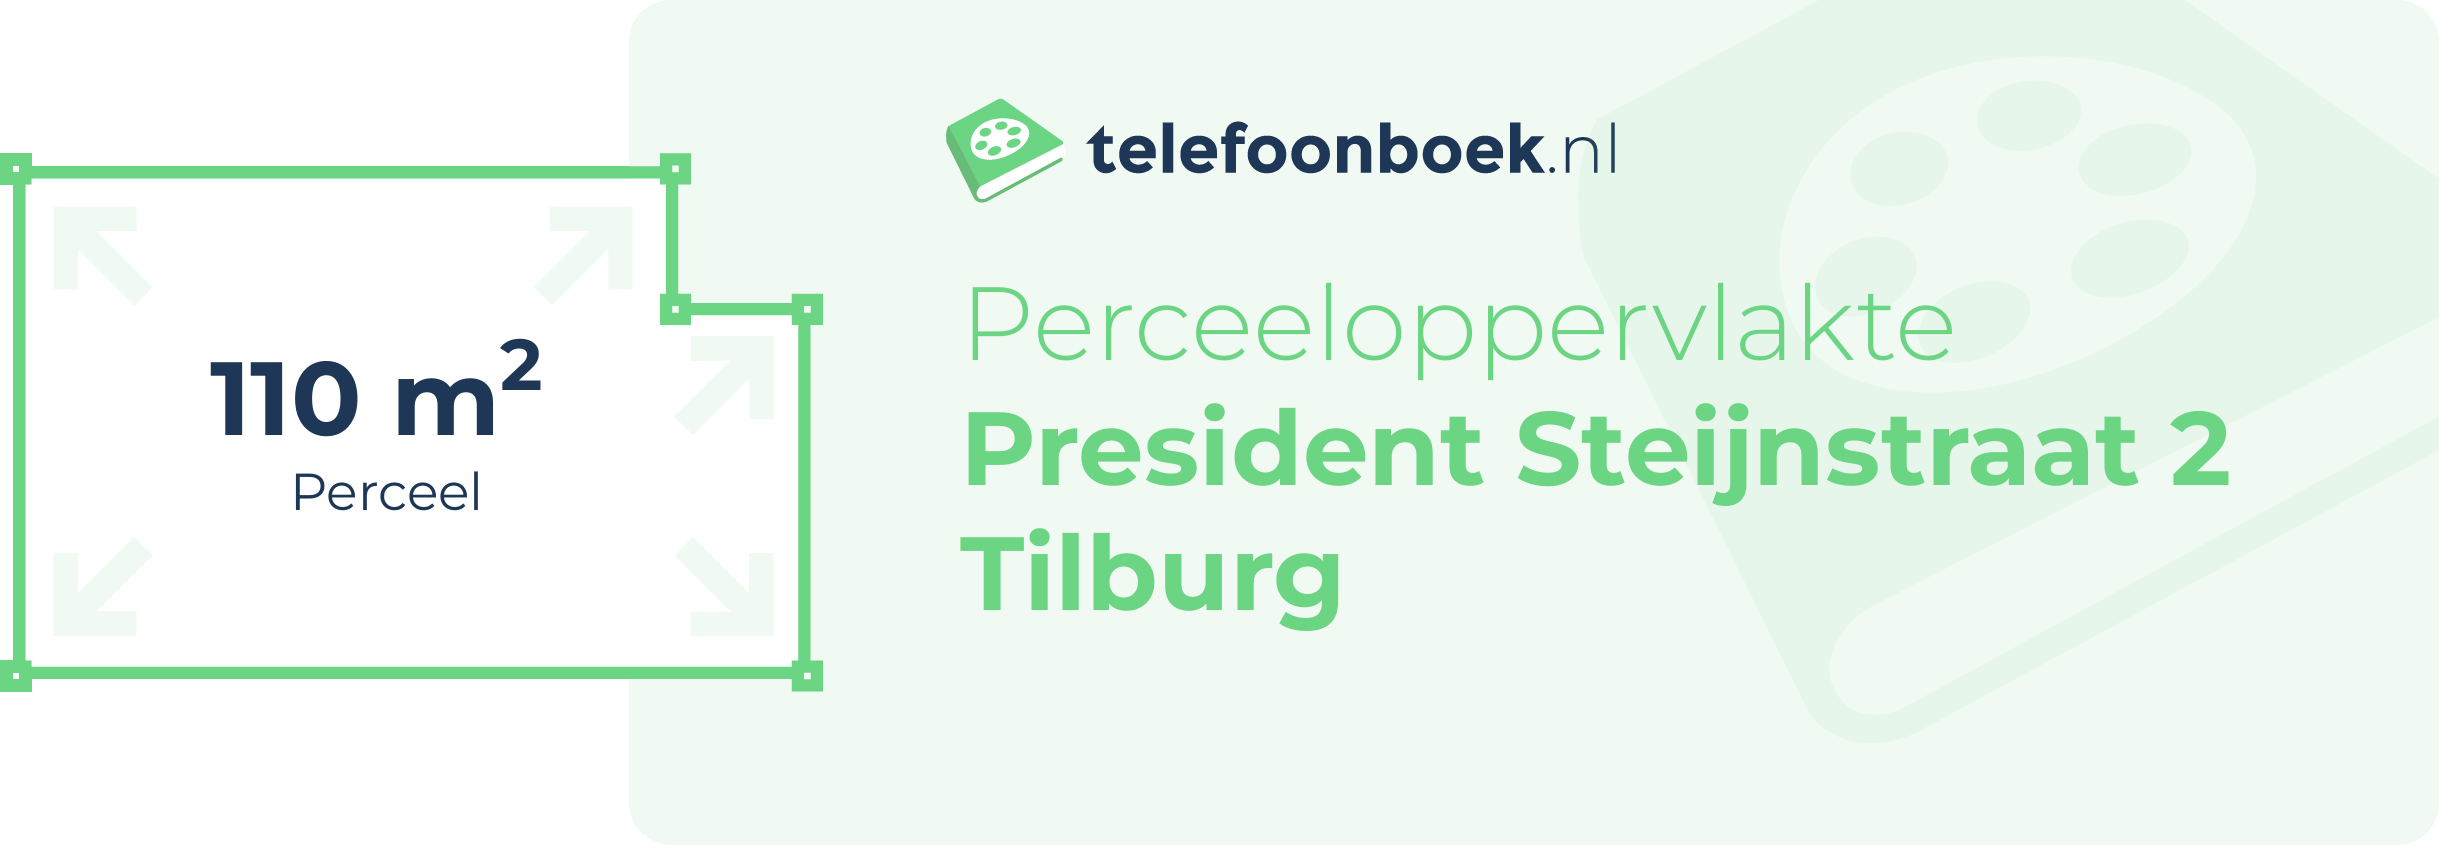 Perceeloppervlakte President Steijnstraat 2 Tilburg